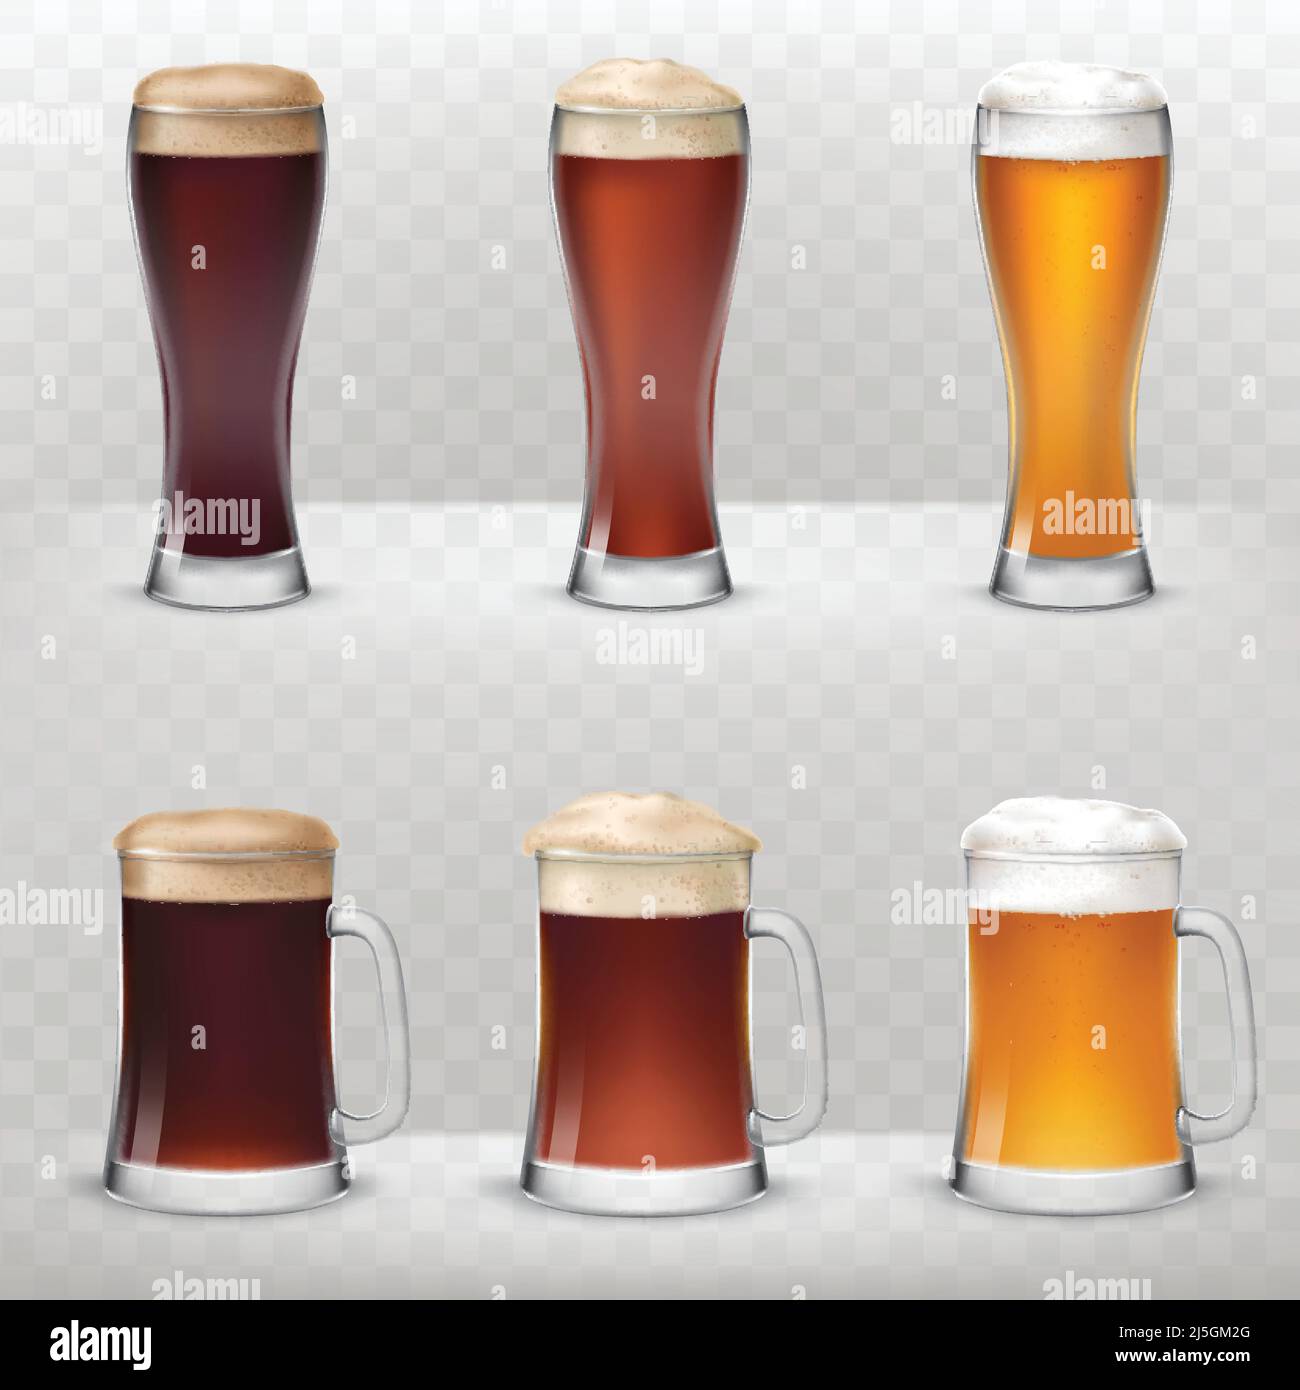 Una serie di illustrazioni vettoriali in uno stile realistico di tazze e bicchieri alti di birra non filtrata, scura e chiara isolato su sfondo grigio. Illustrazione Vettoriale